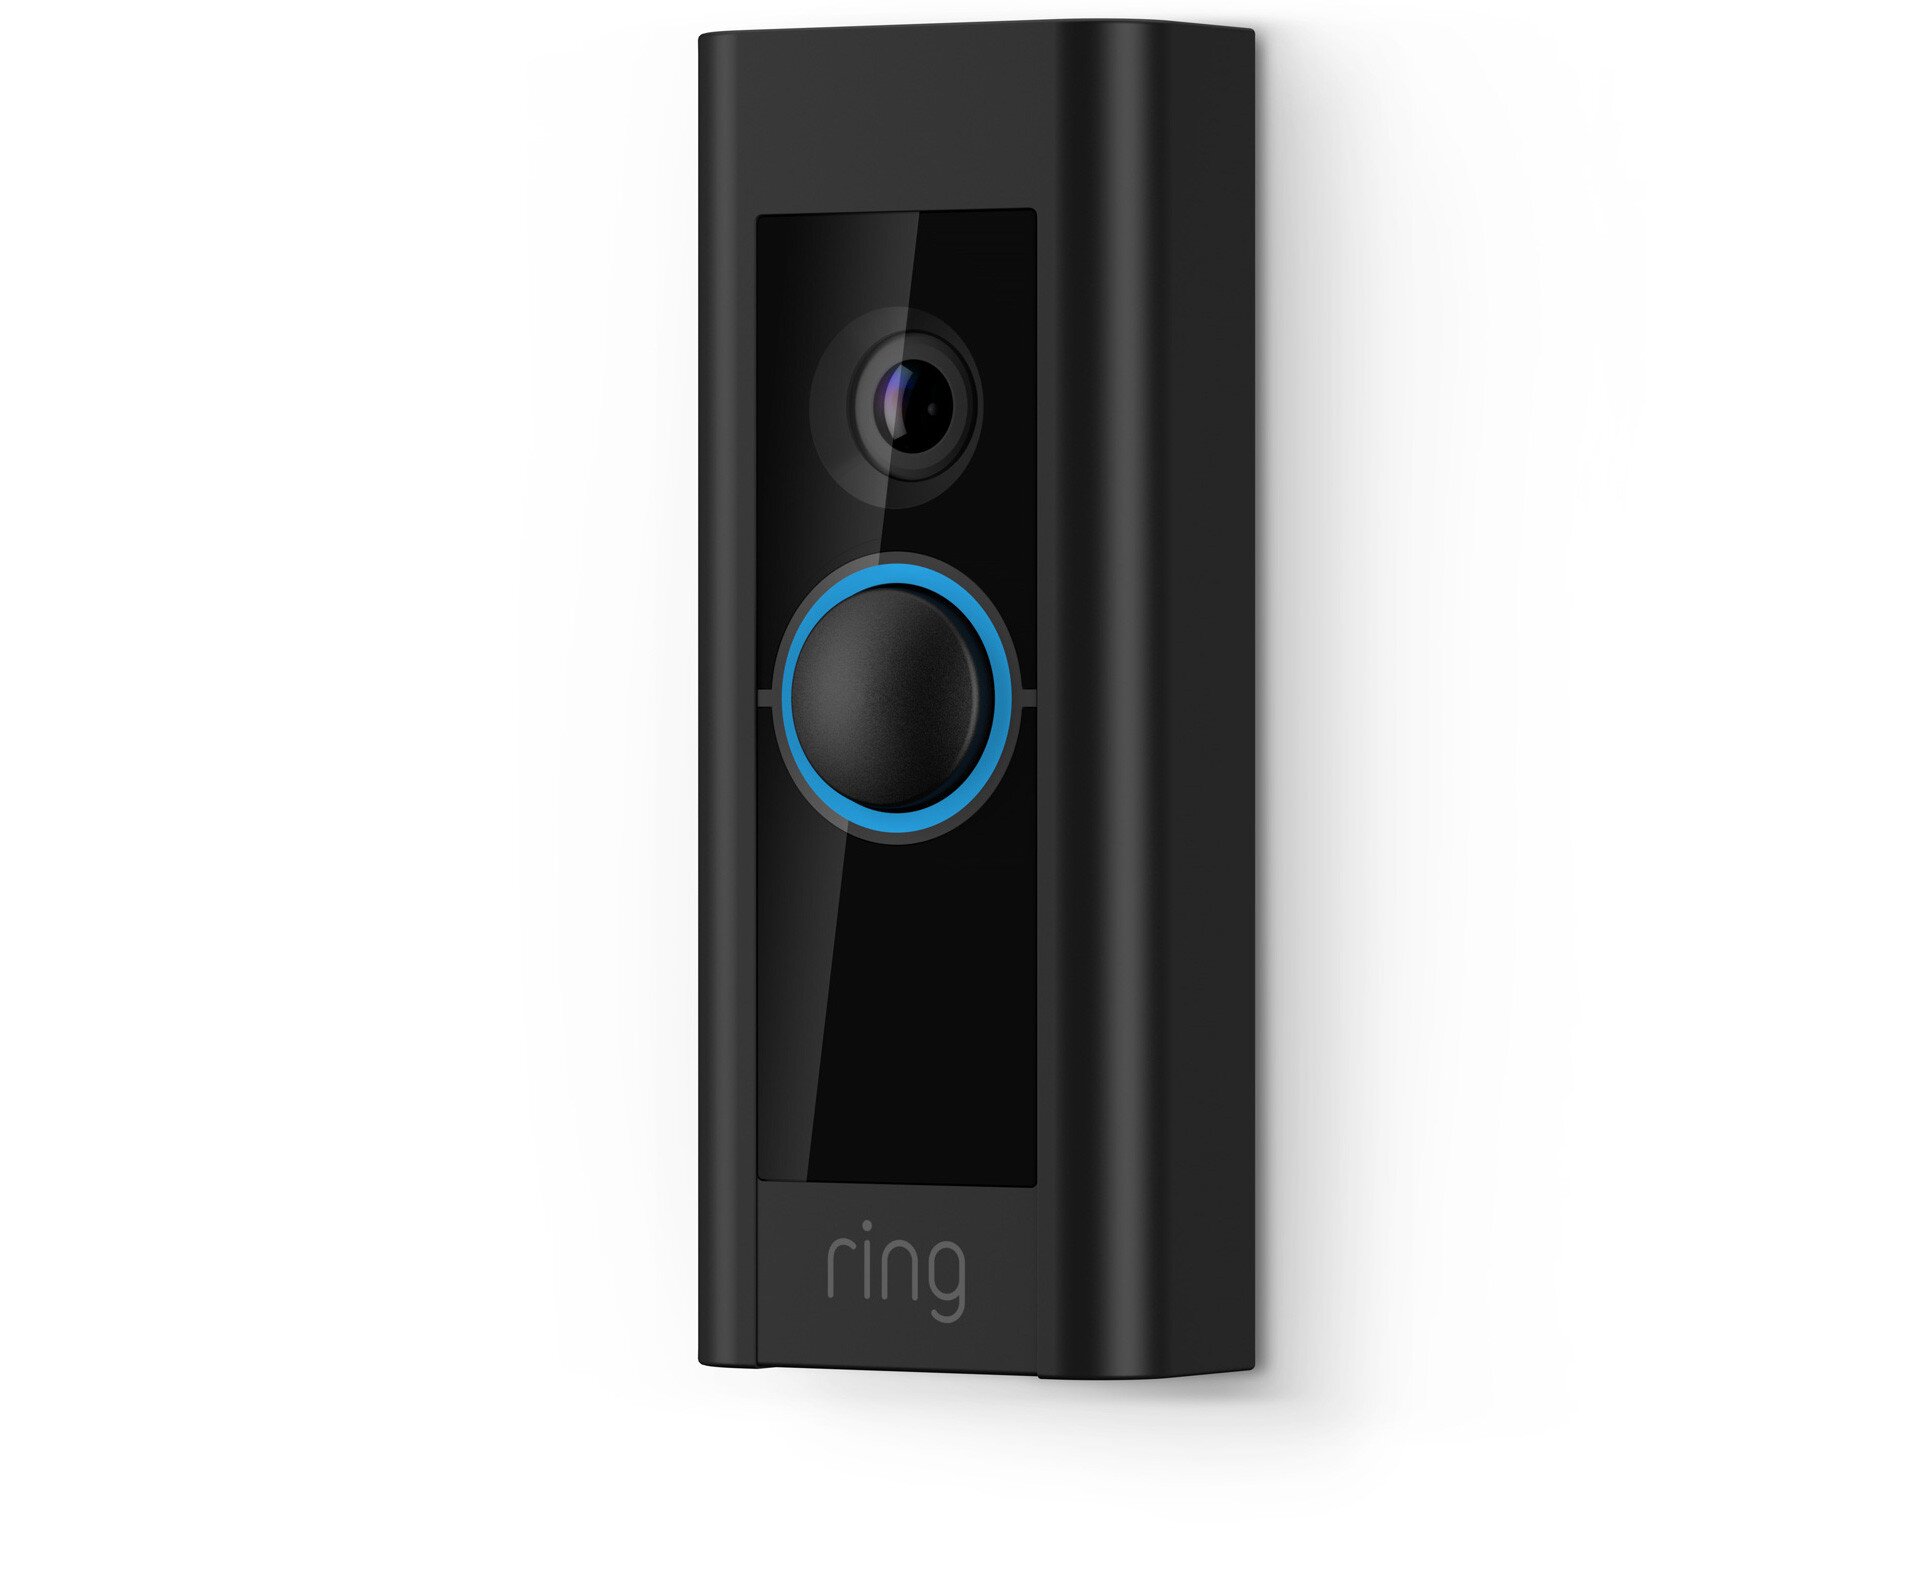 Buy Ring Video Doorbell Pro online in Pakistan - Tejar.pk